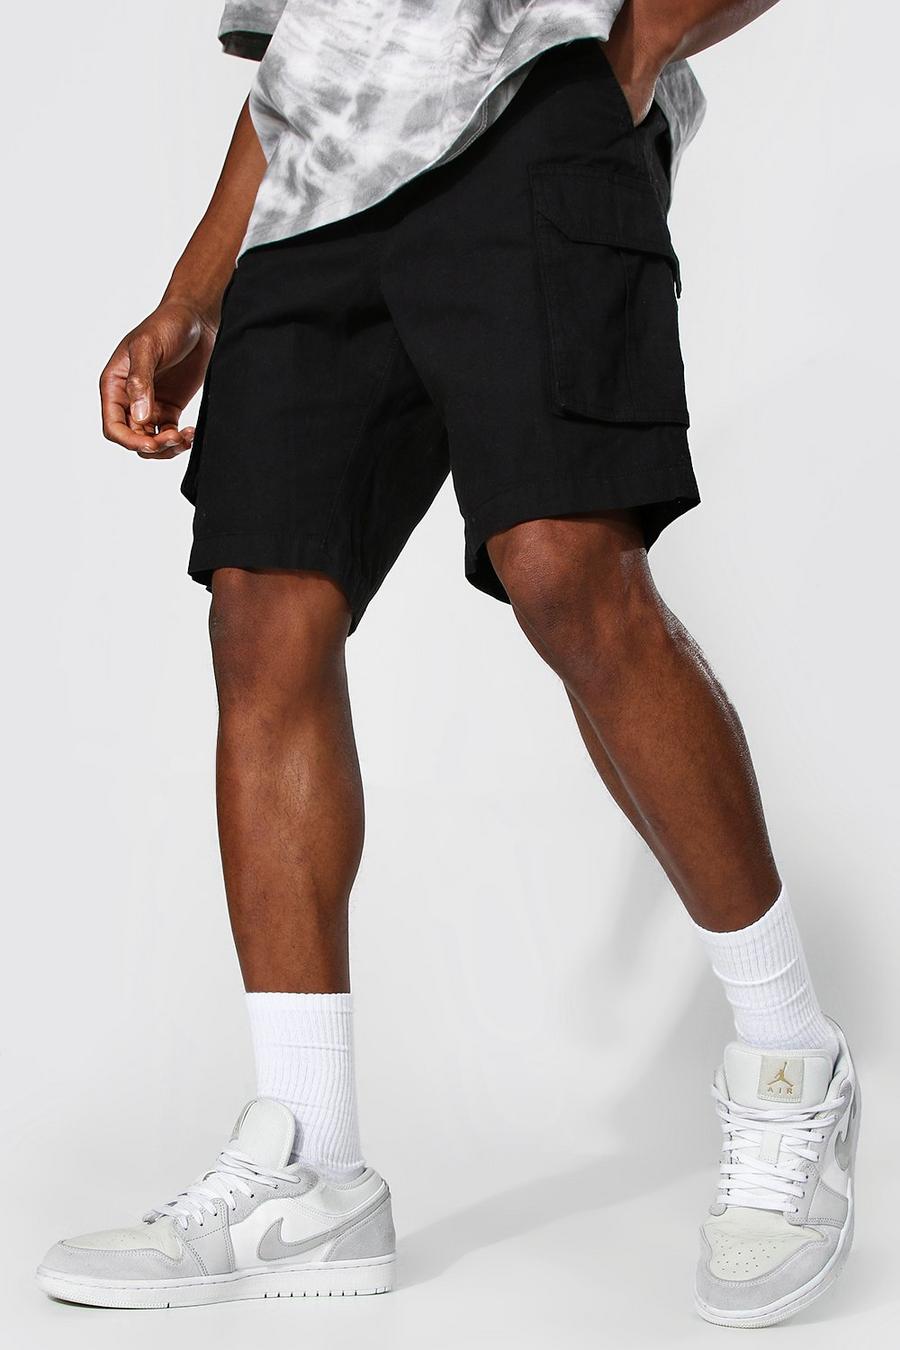 Mens shorts | Shop all shorts for men | boohoo Australia